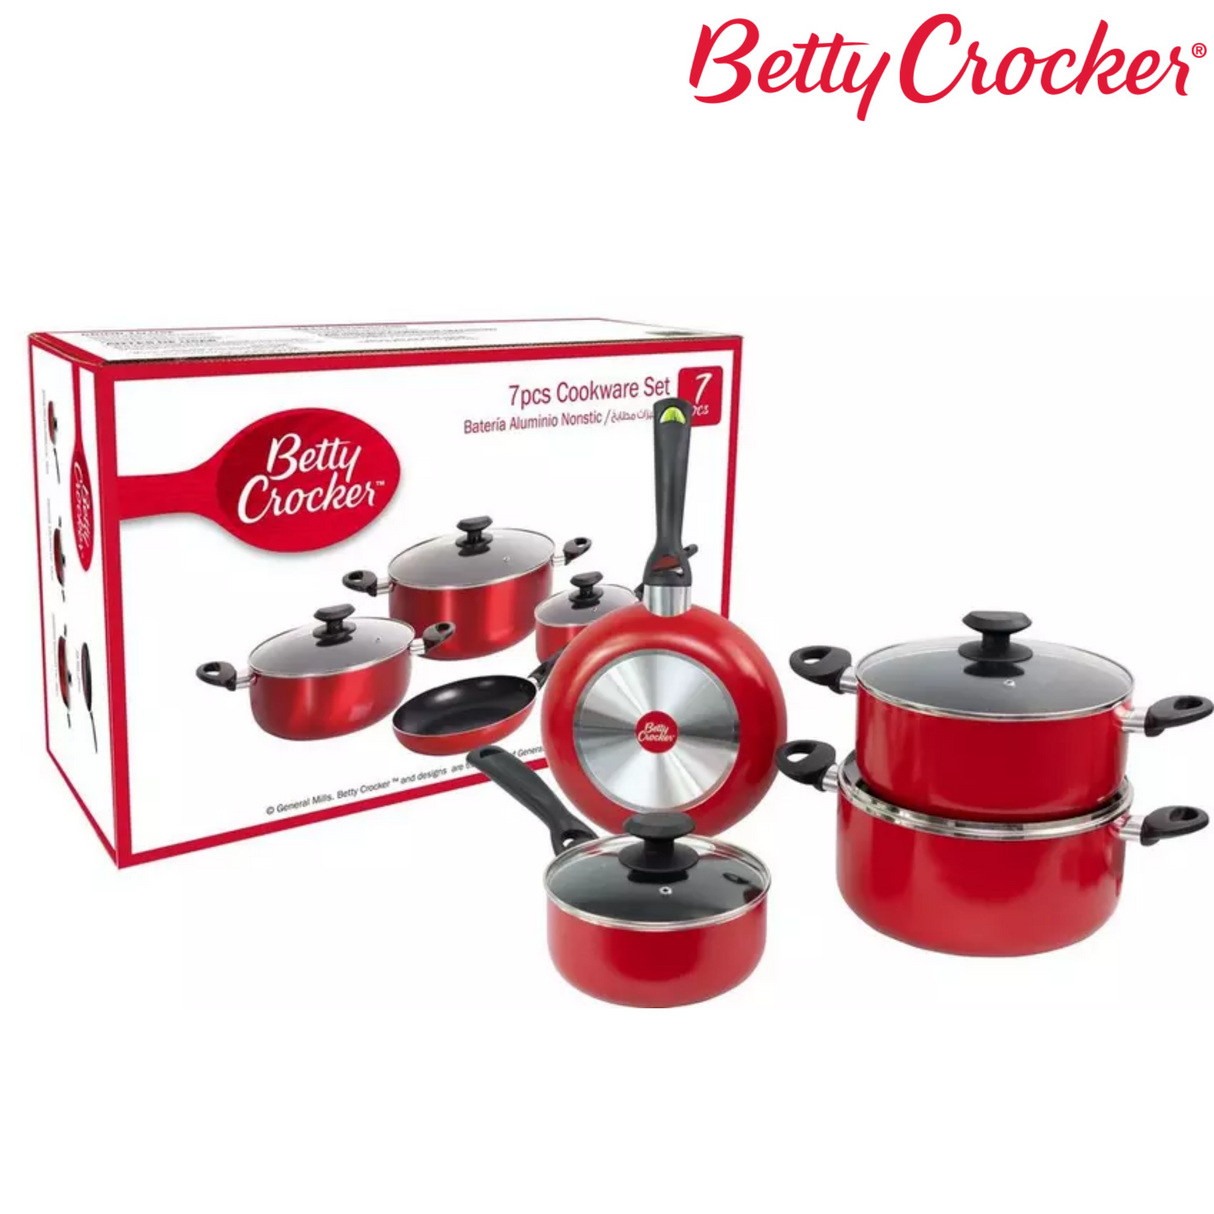 Betty Crocker Cookware Set - 7 pieces